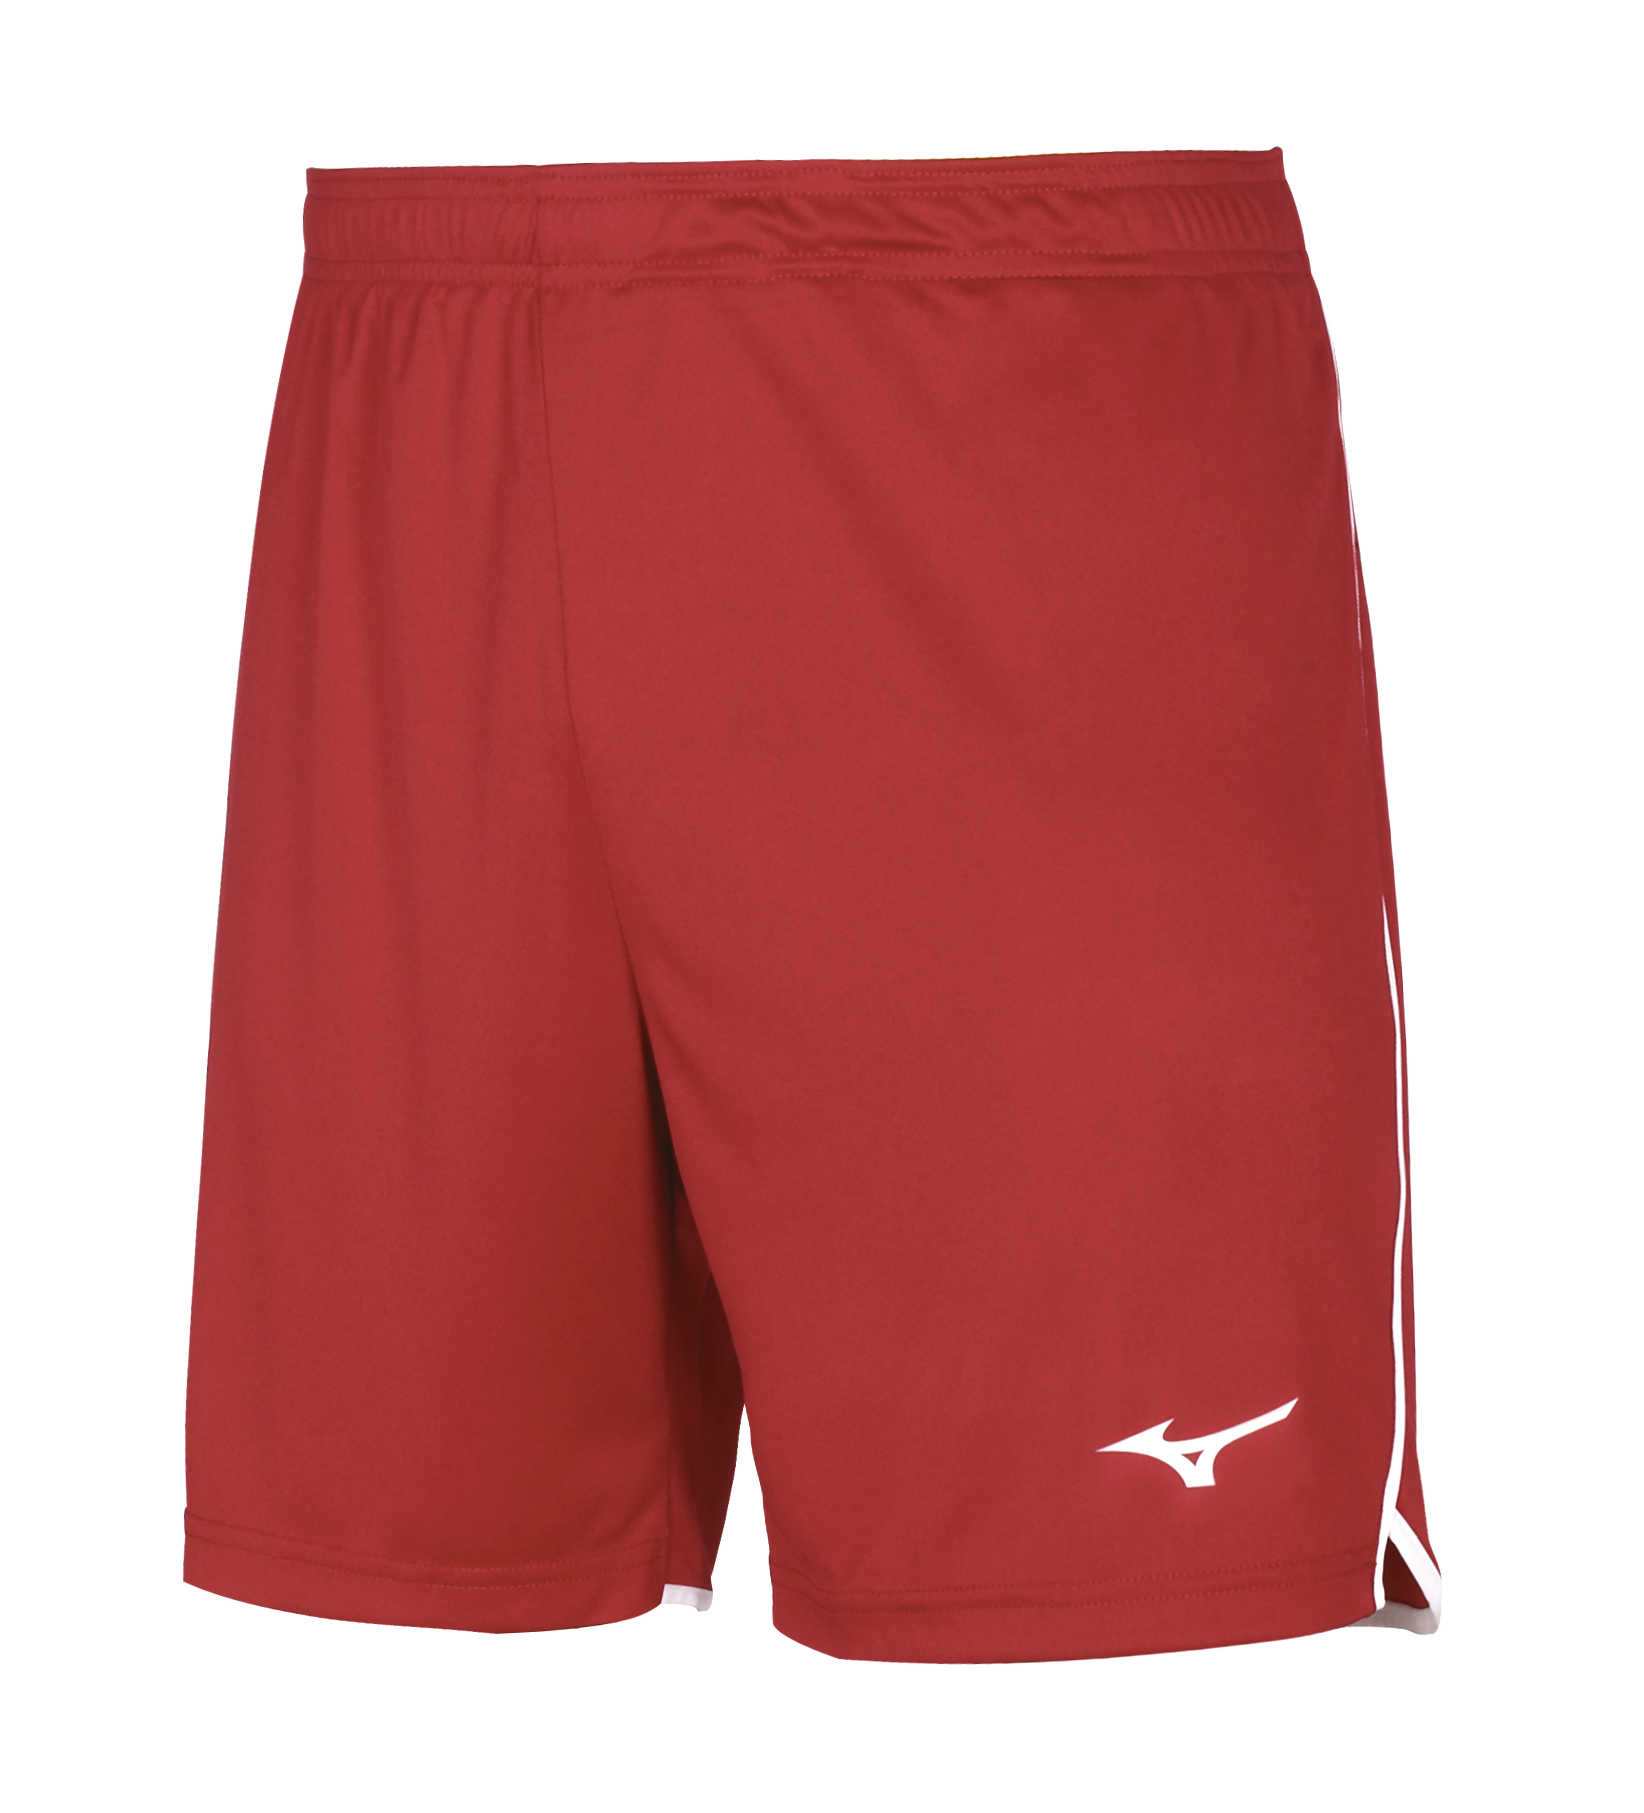 Спортивные шорты мужские Mizuno V2EB7001 бордовые 3XL - купить в ABM Sport, цена на Мегамаркет